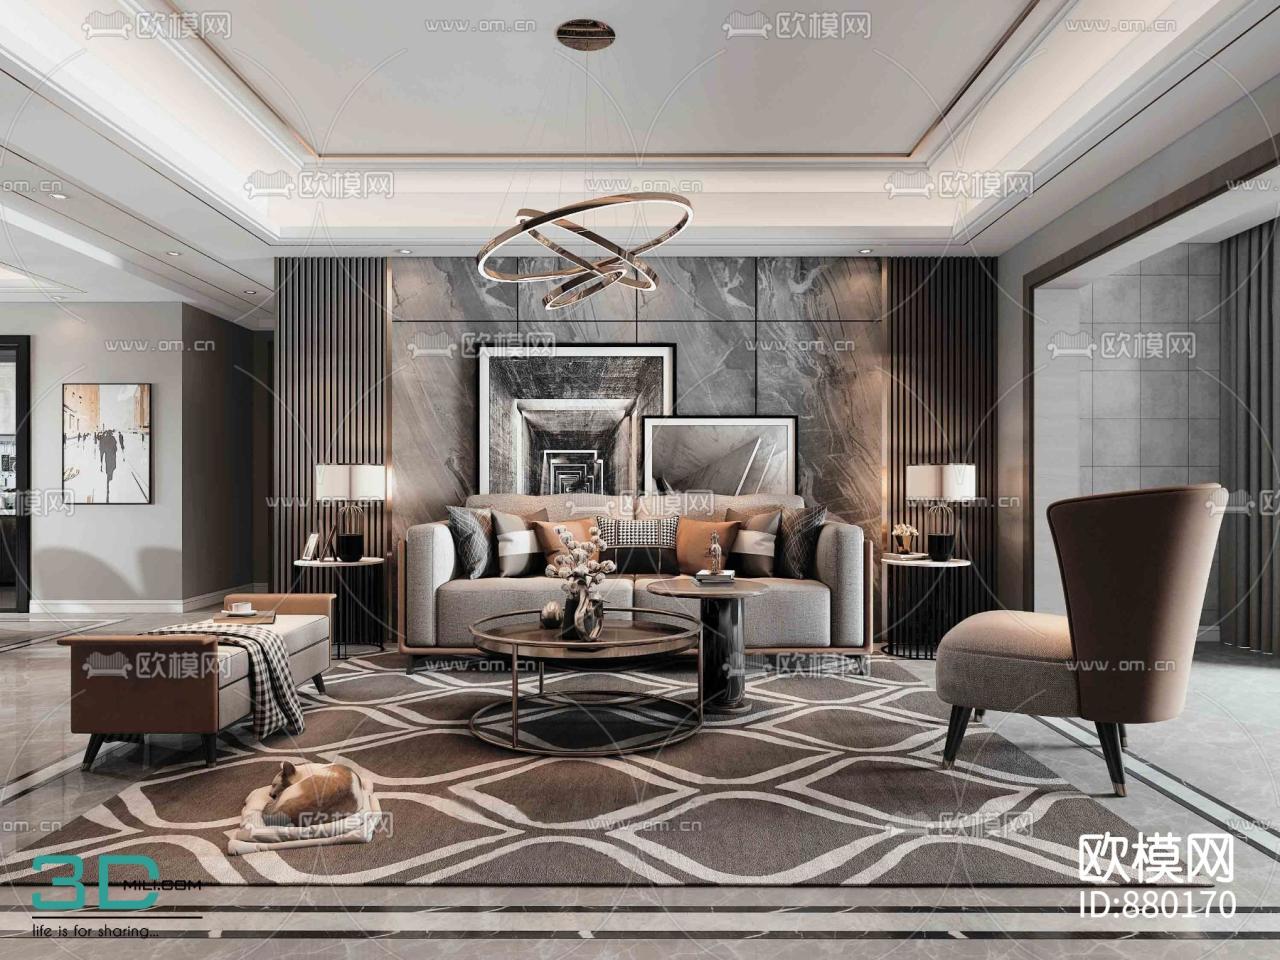 Room living 3d model models interior cgtrader downloadfree3d livingroom leave